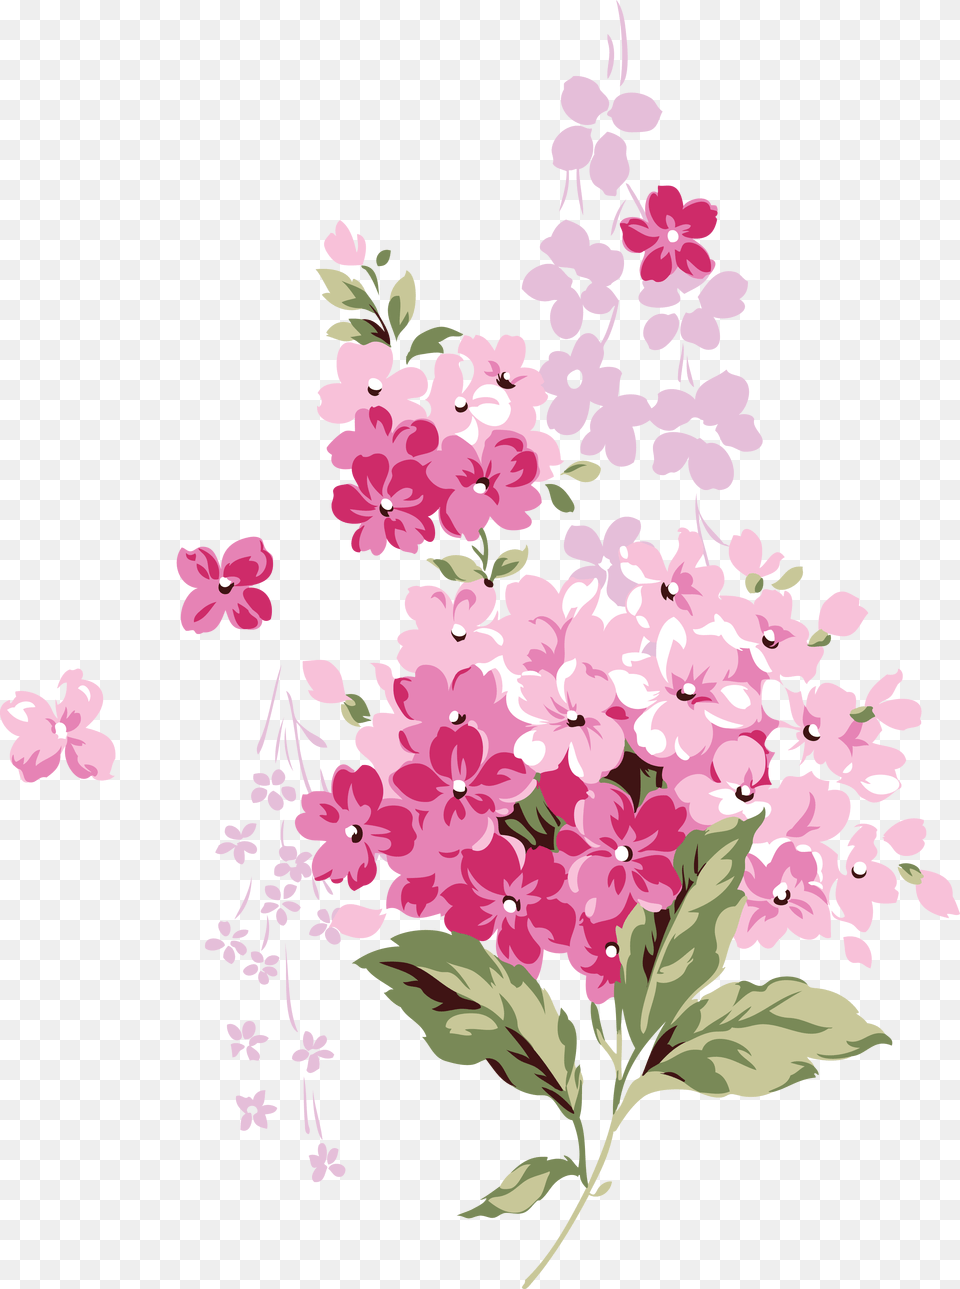 Lilac Mental Health Planner Printables, Art, Floral Design, Flower, Graphics Png Image